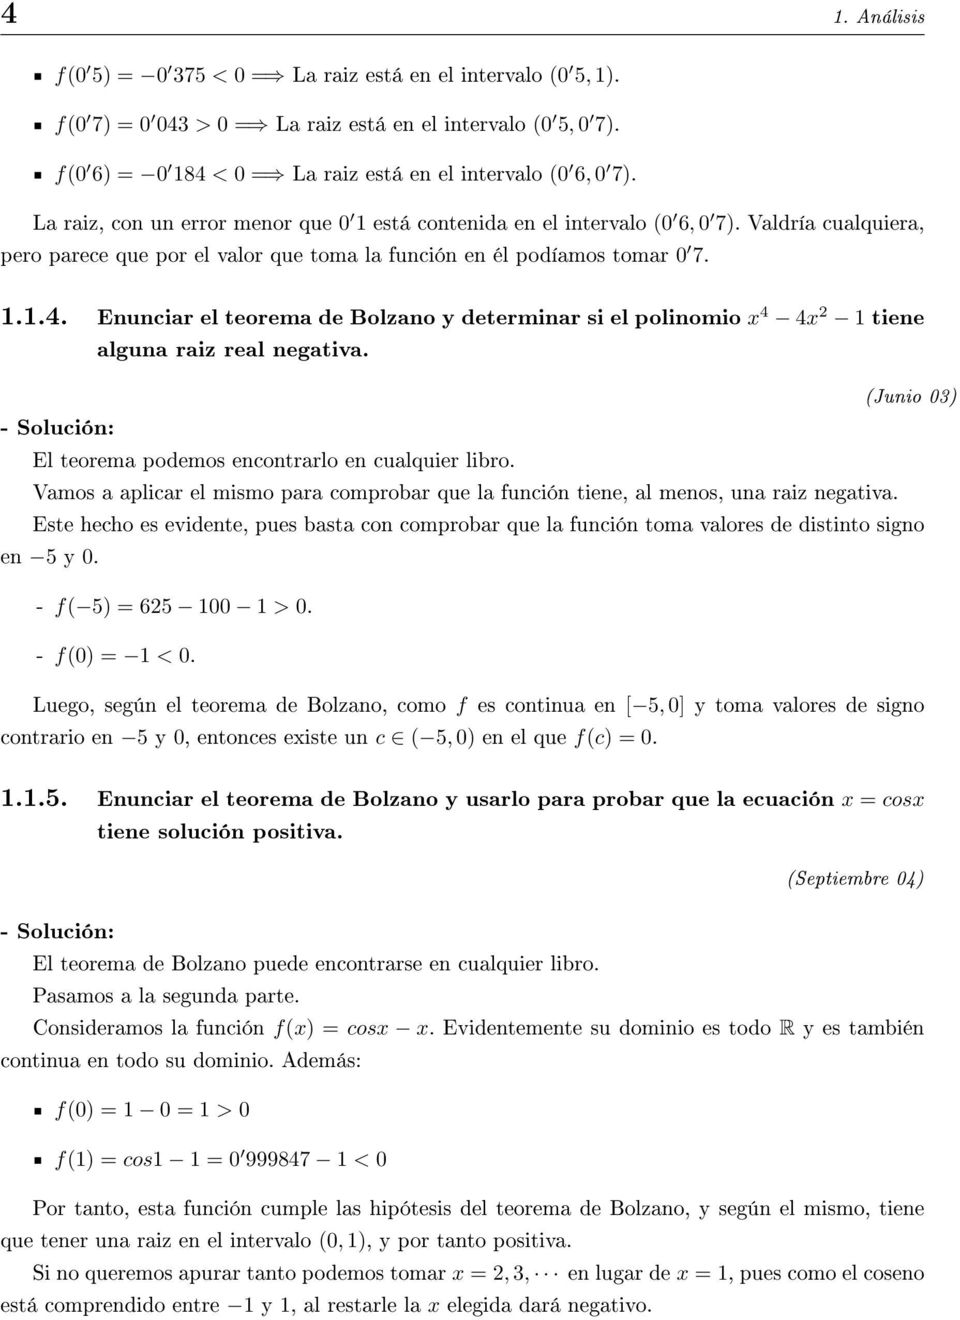 Enunciar el teorema de Bolzano y determinar si el polinomio x 4 4x 1 tiene alguna raiz real negativa. (Junio 03) El teorema podemos encontrarlo en cualquier libro.